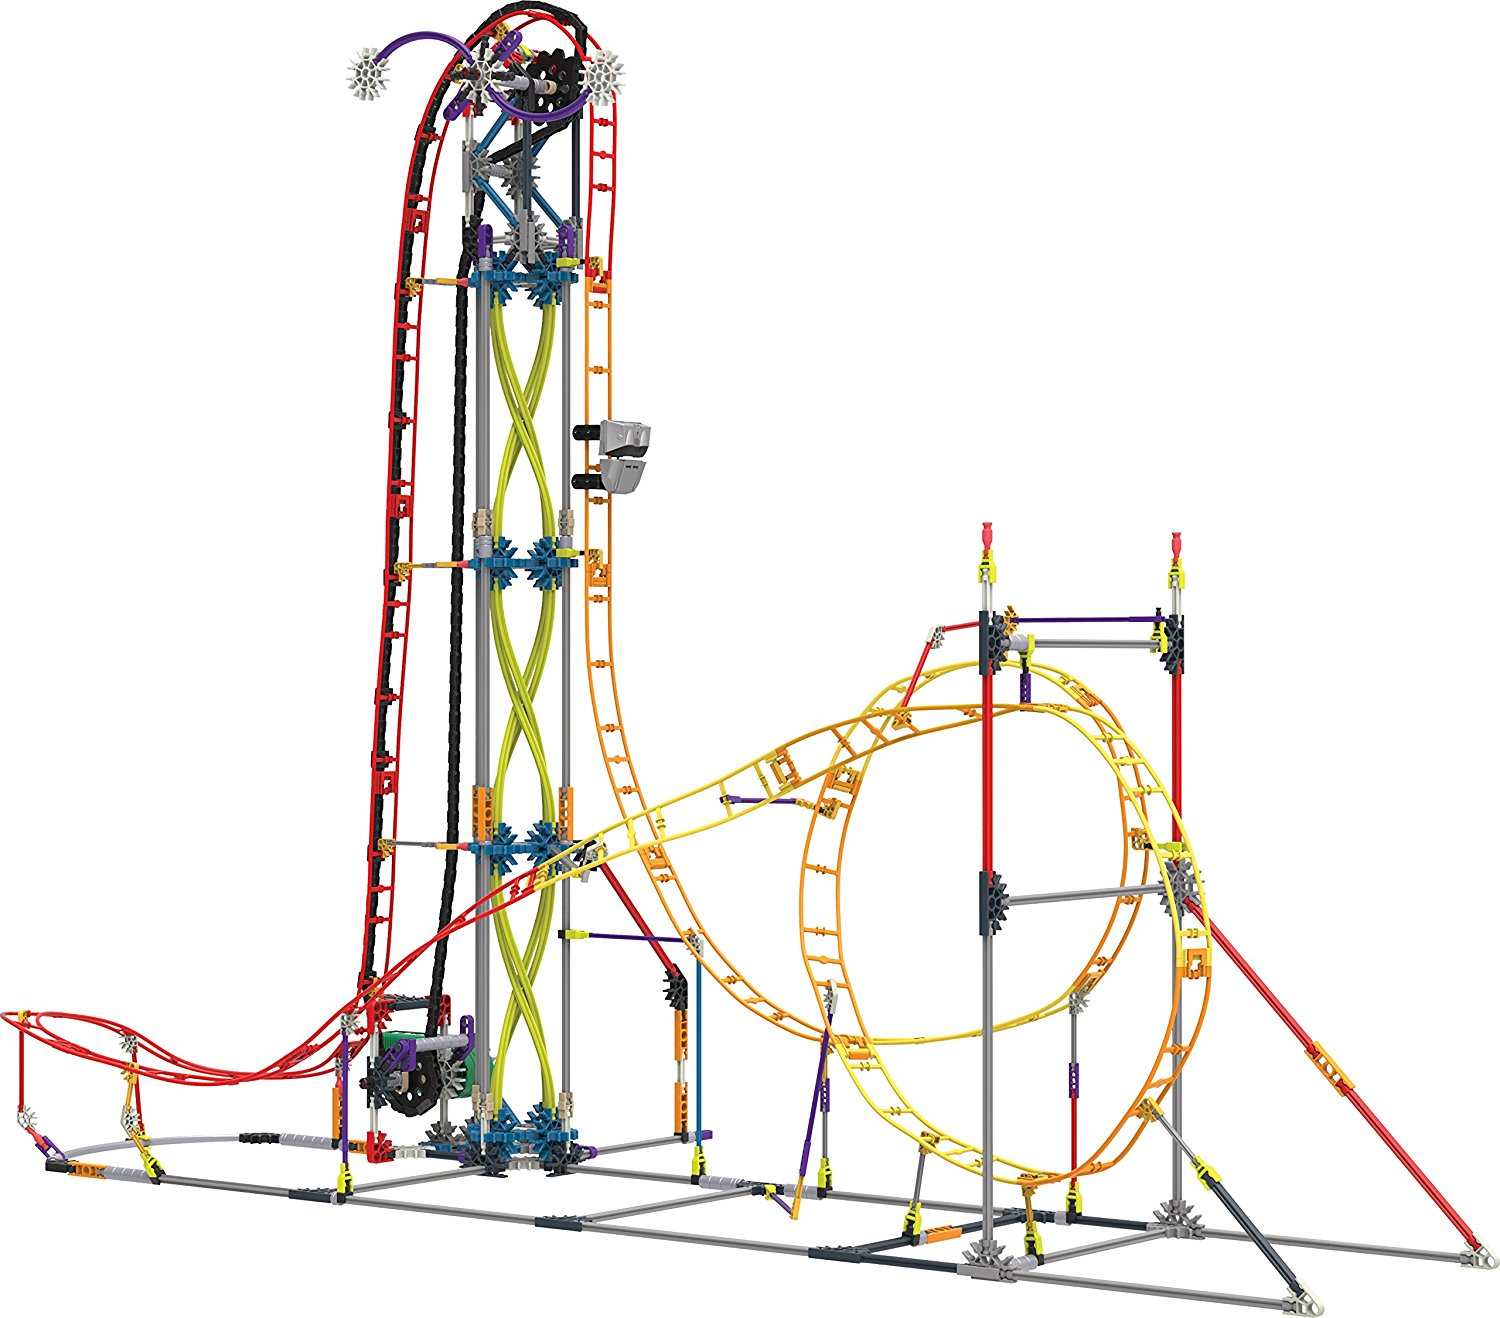 K'Nex roller coaster